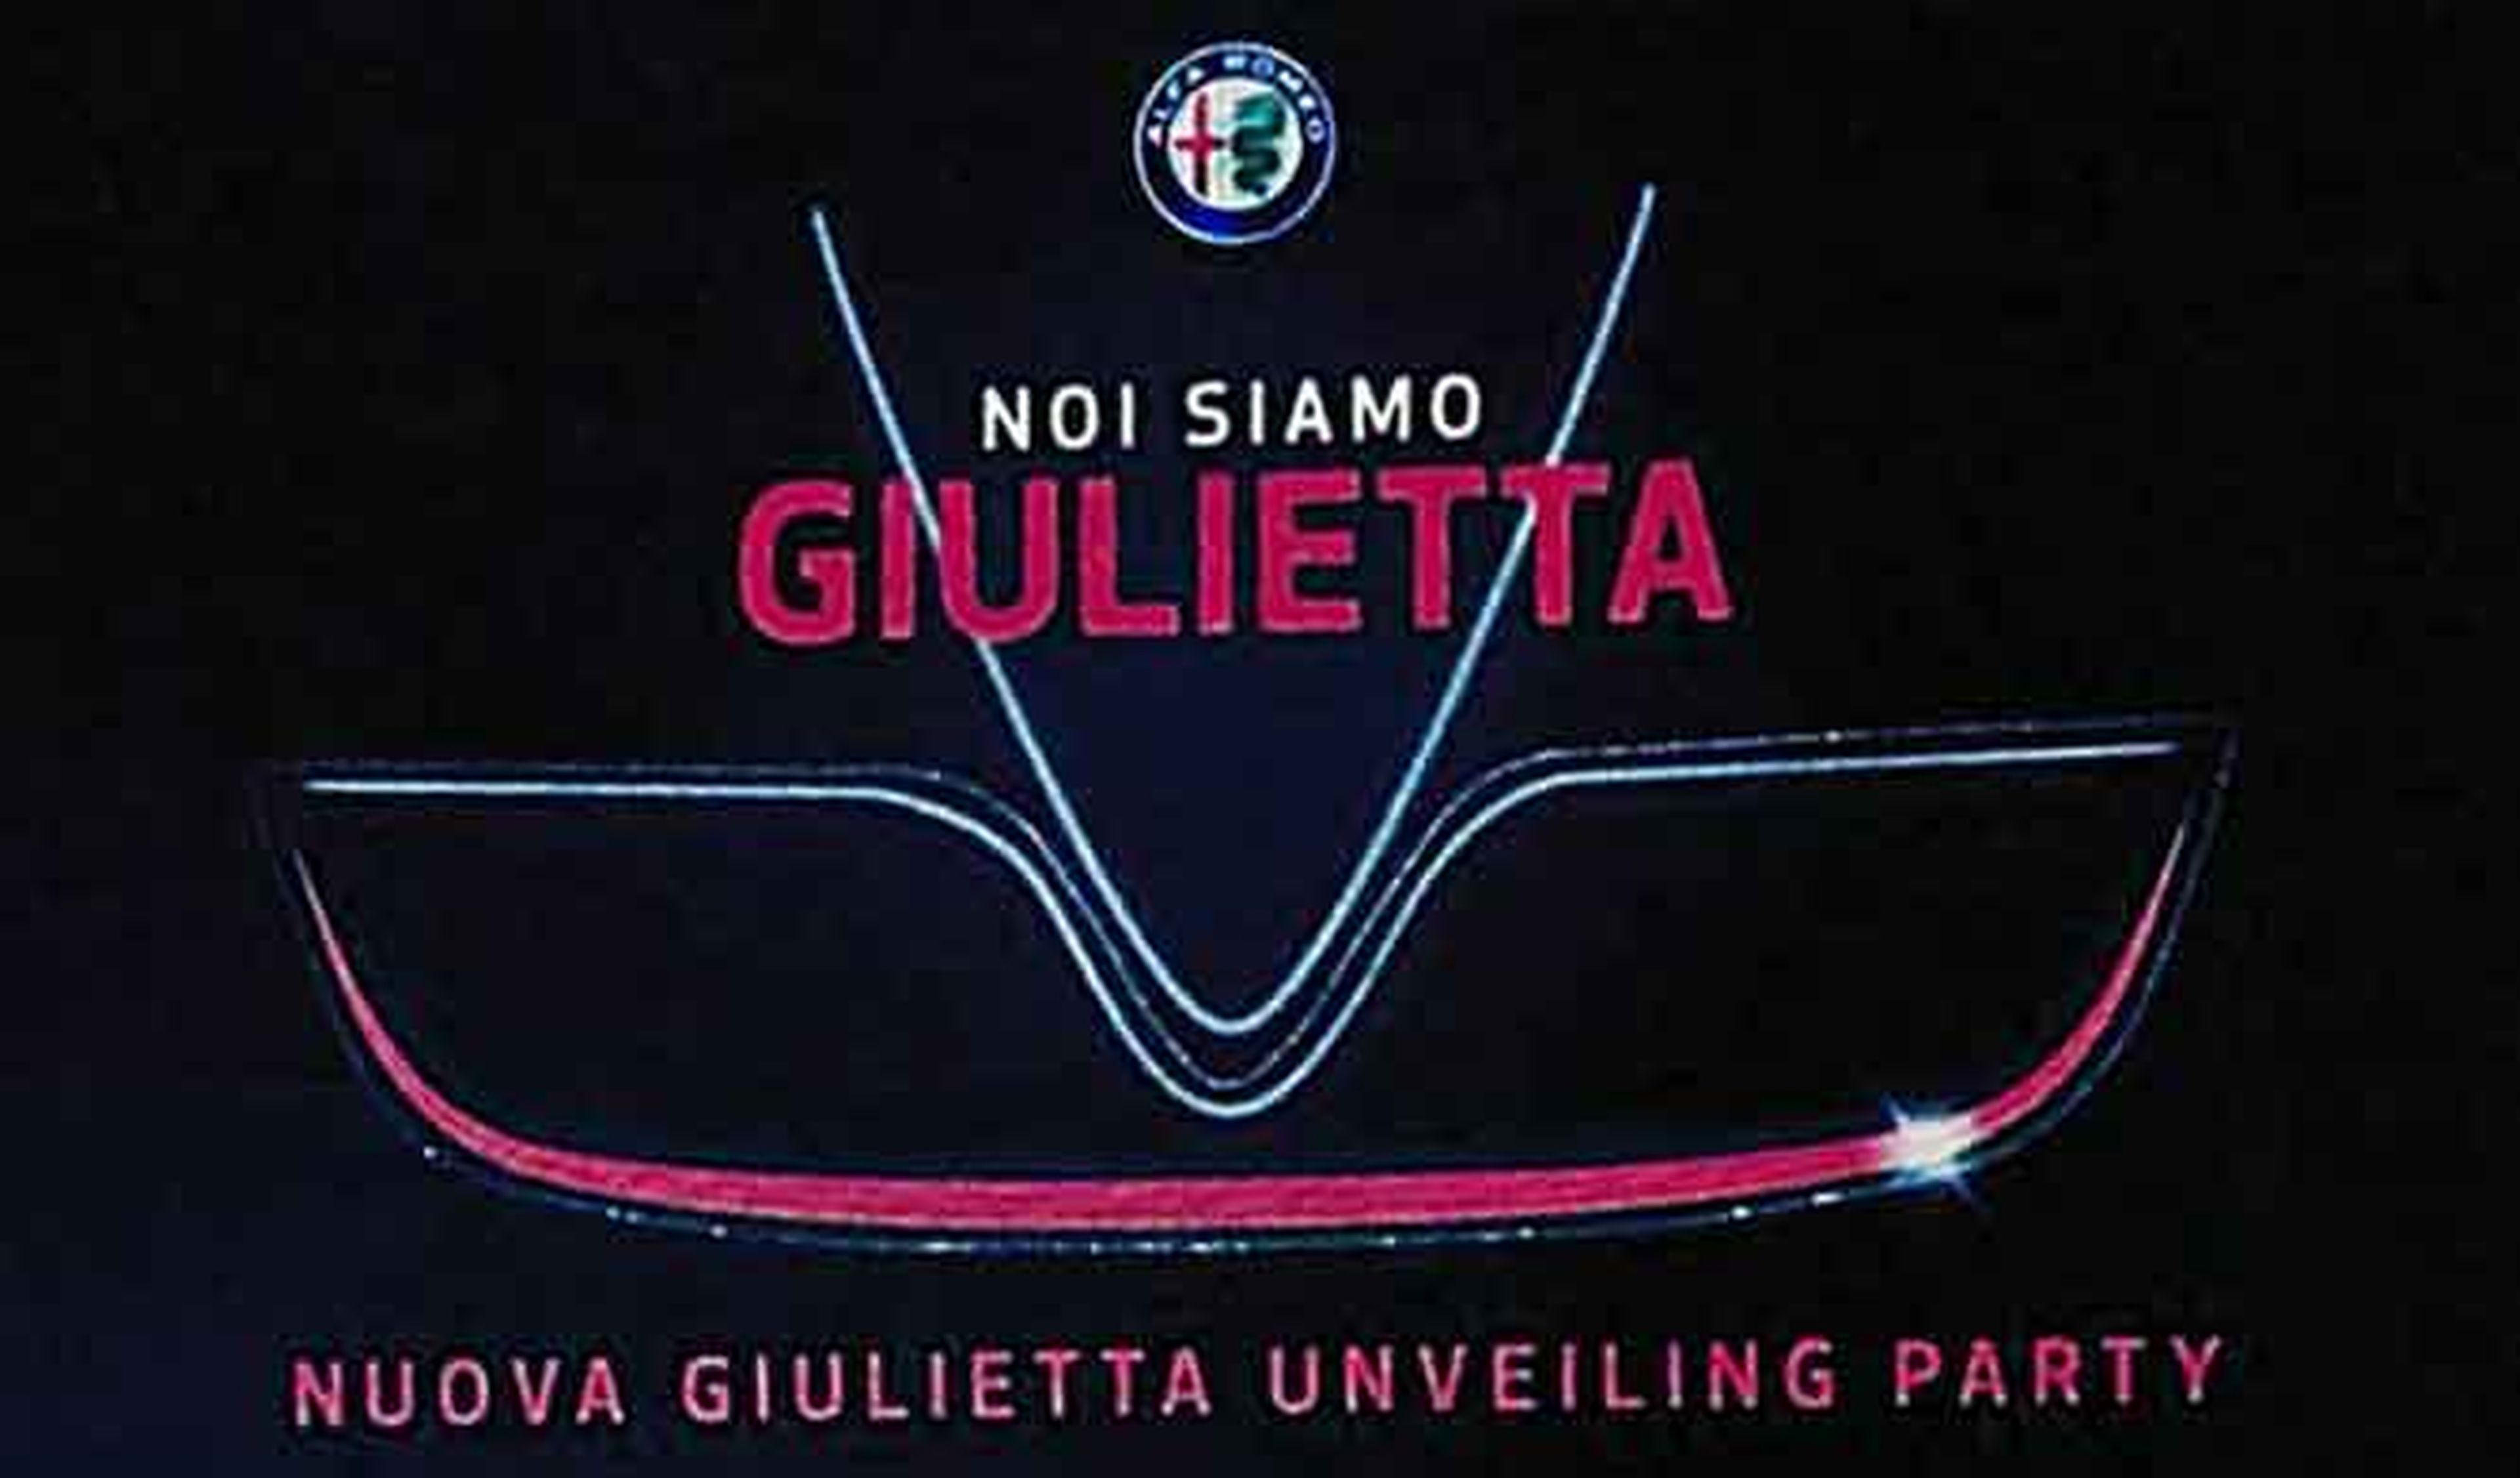 Restyling del Alfa Romeo Giulietta debuta el 24 de febrero